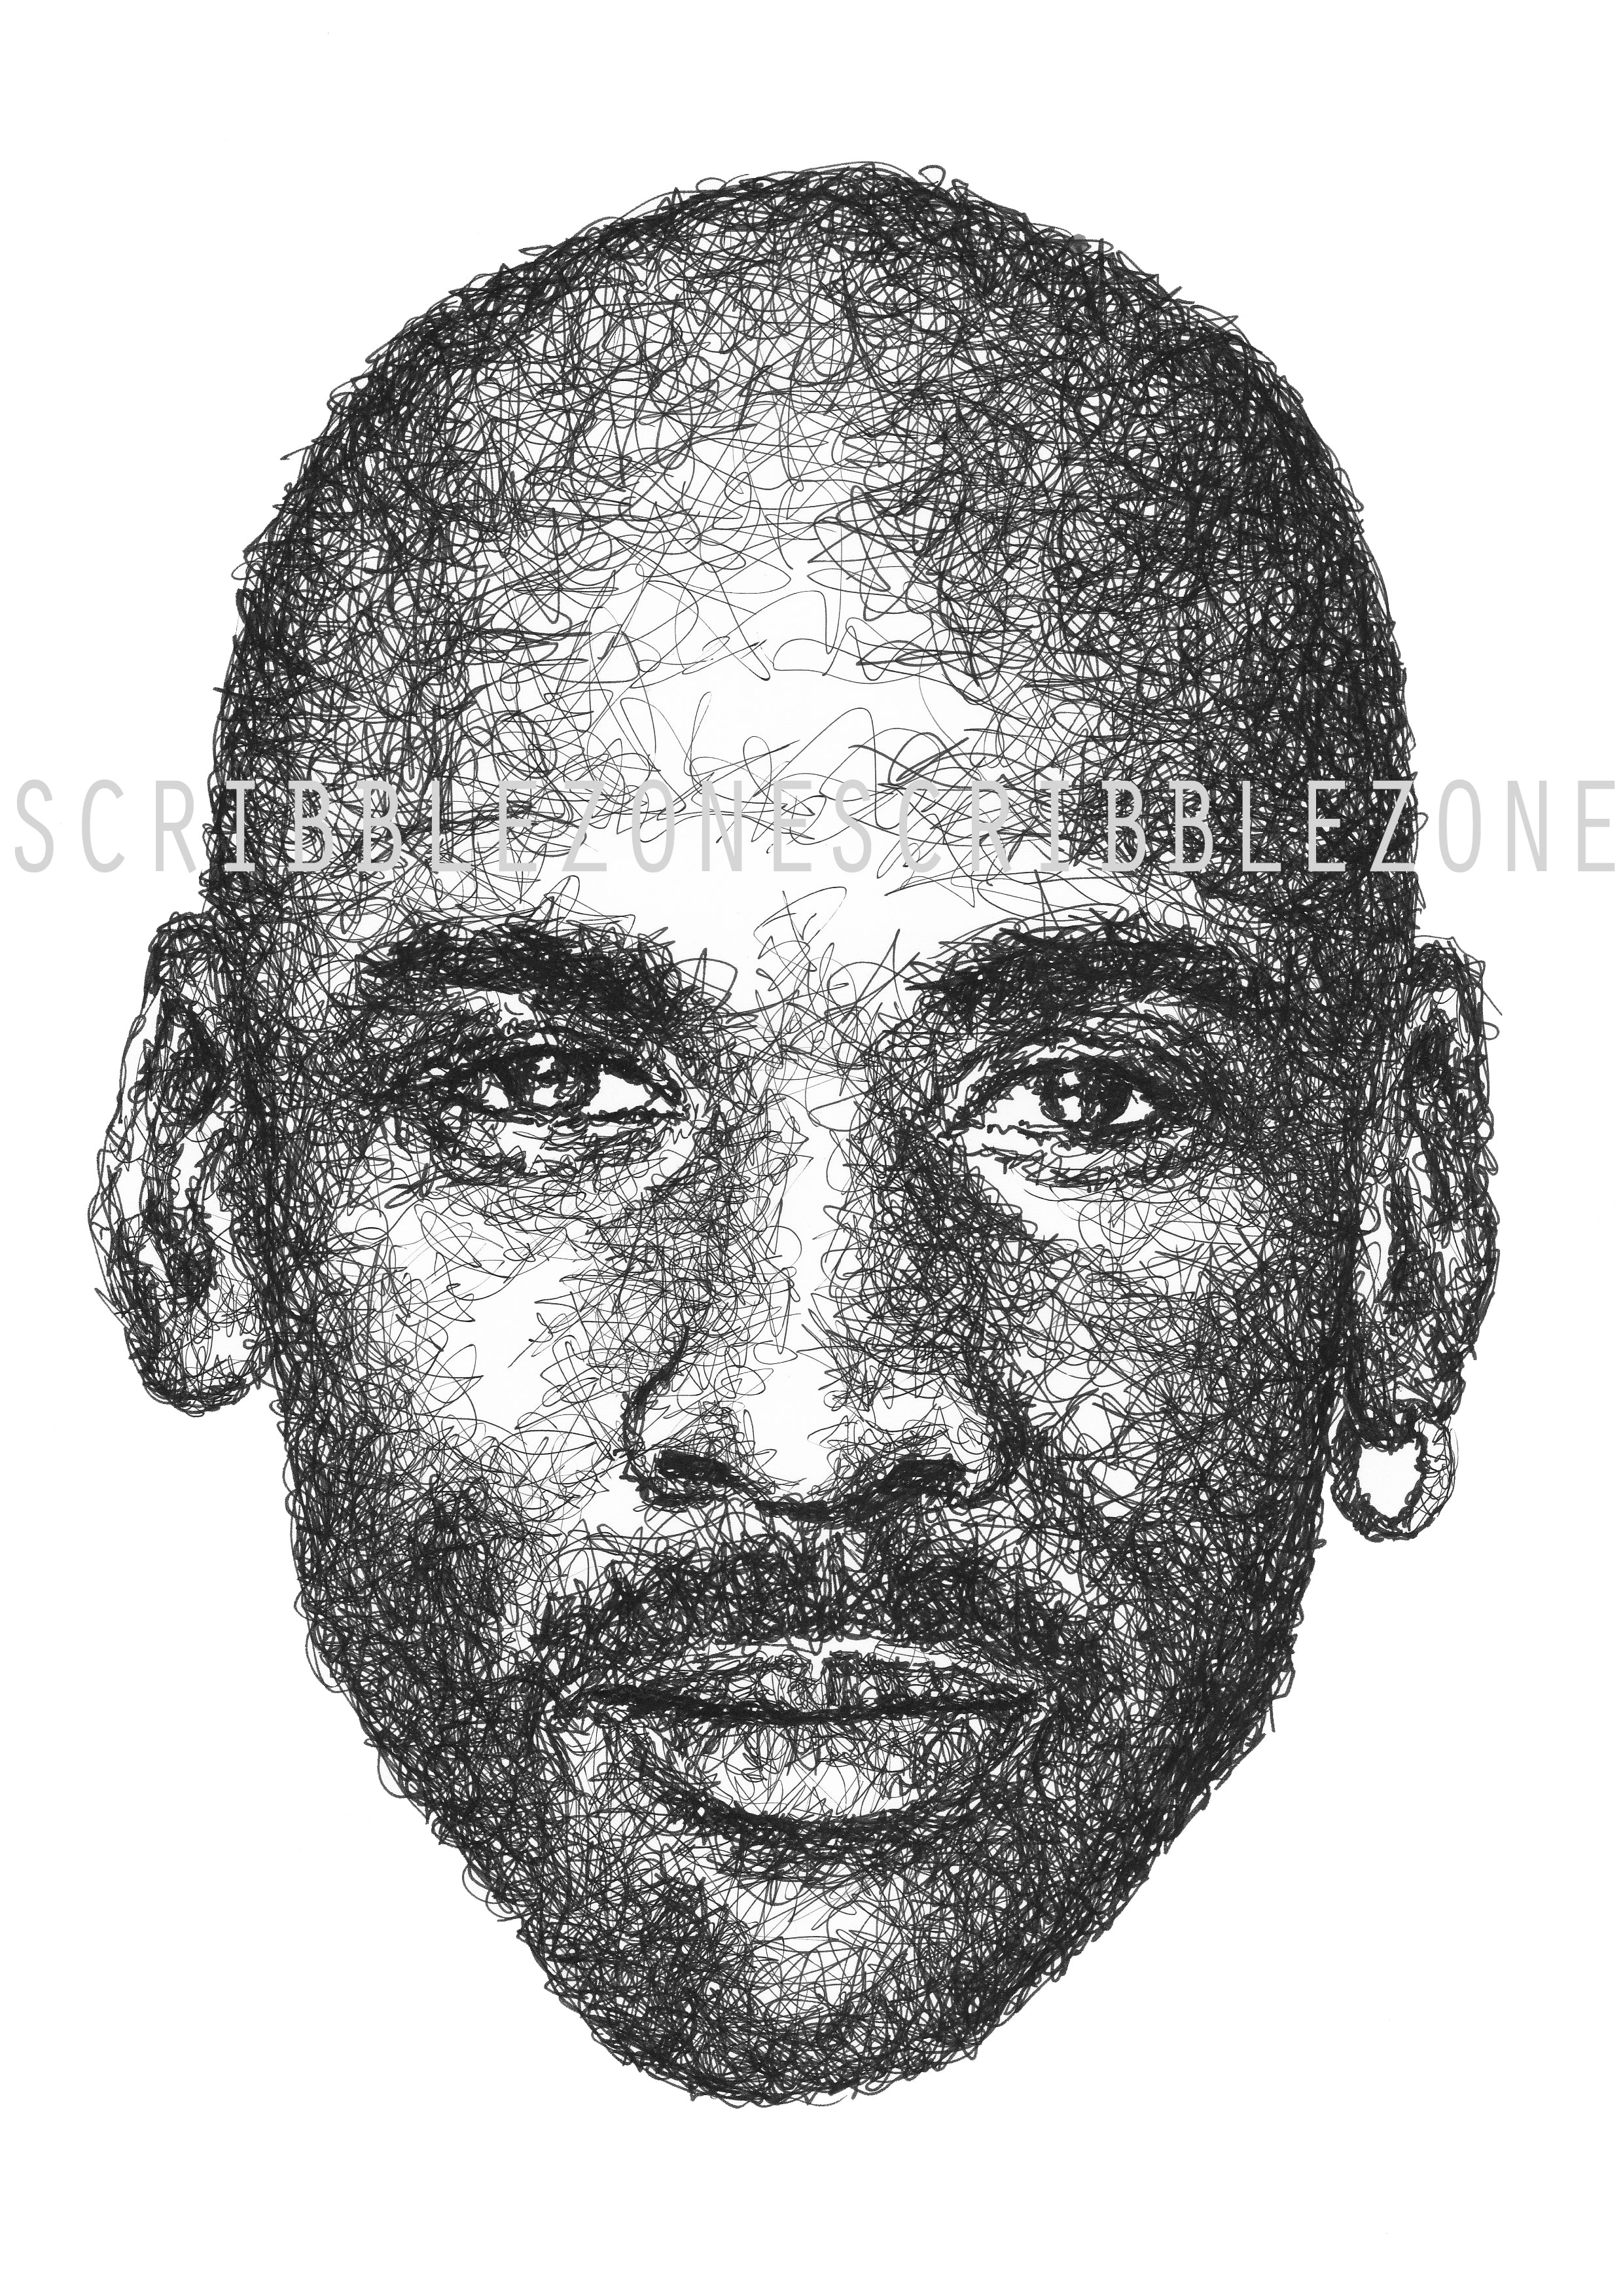 Michael Jordan Portrait der Künstlerin Marilena Hamm alias Scribblezone, im unversechselbaren Scribble-Stil gezeichnet, mit Wasserzeichen.